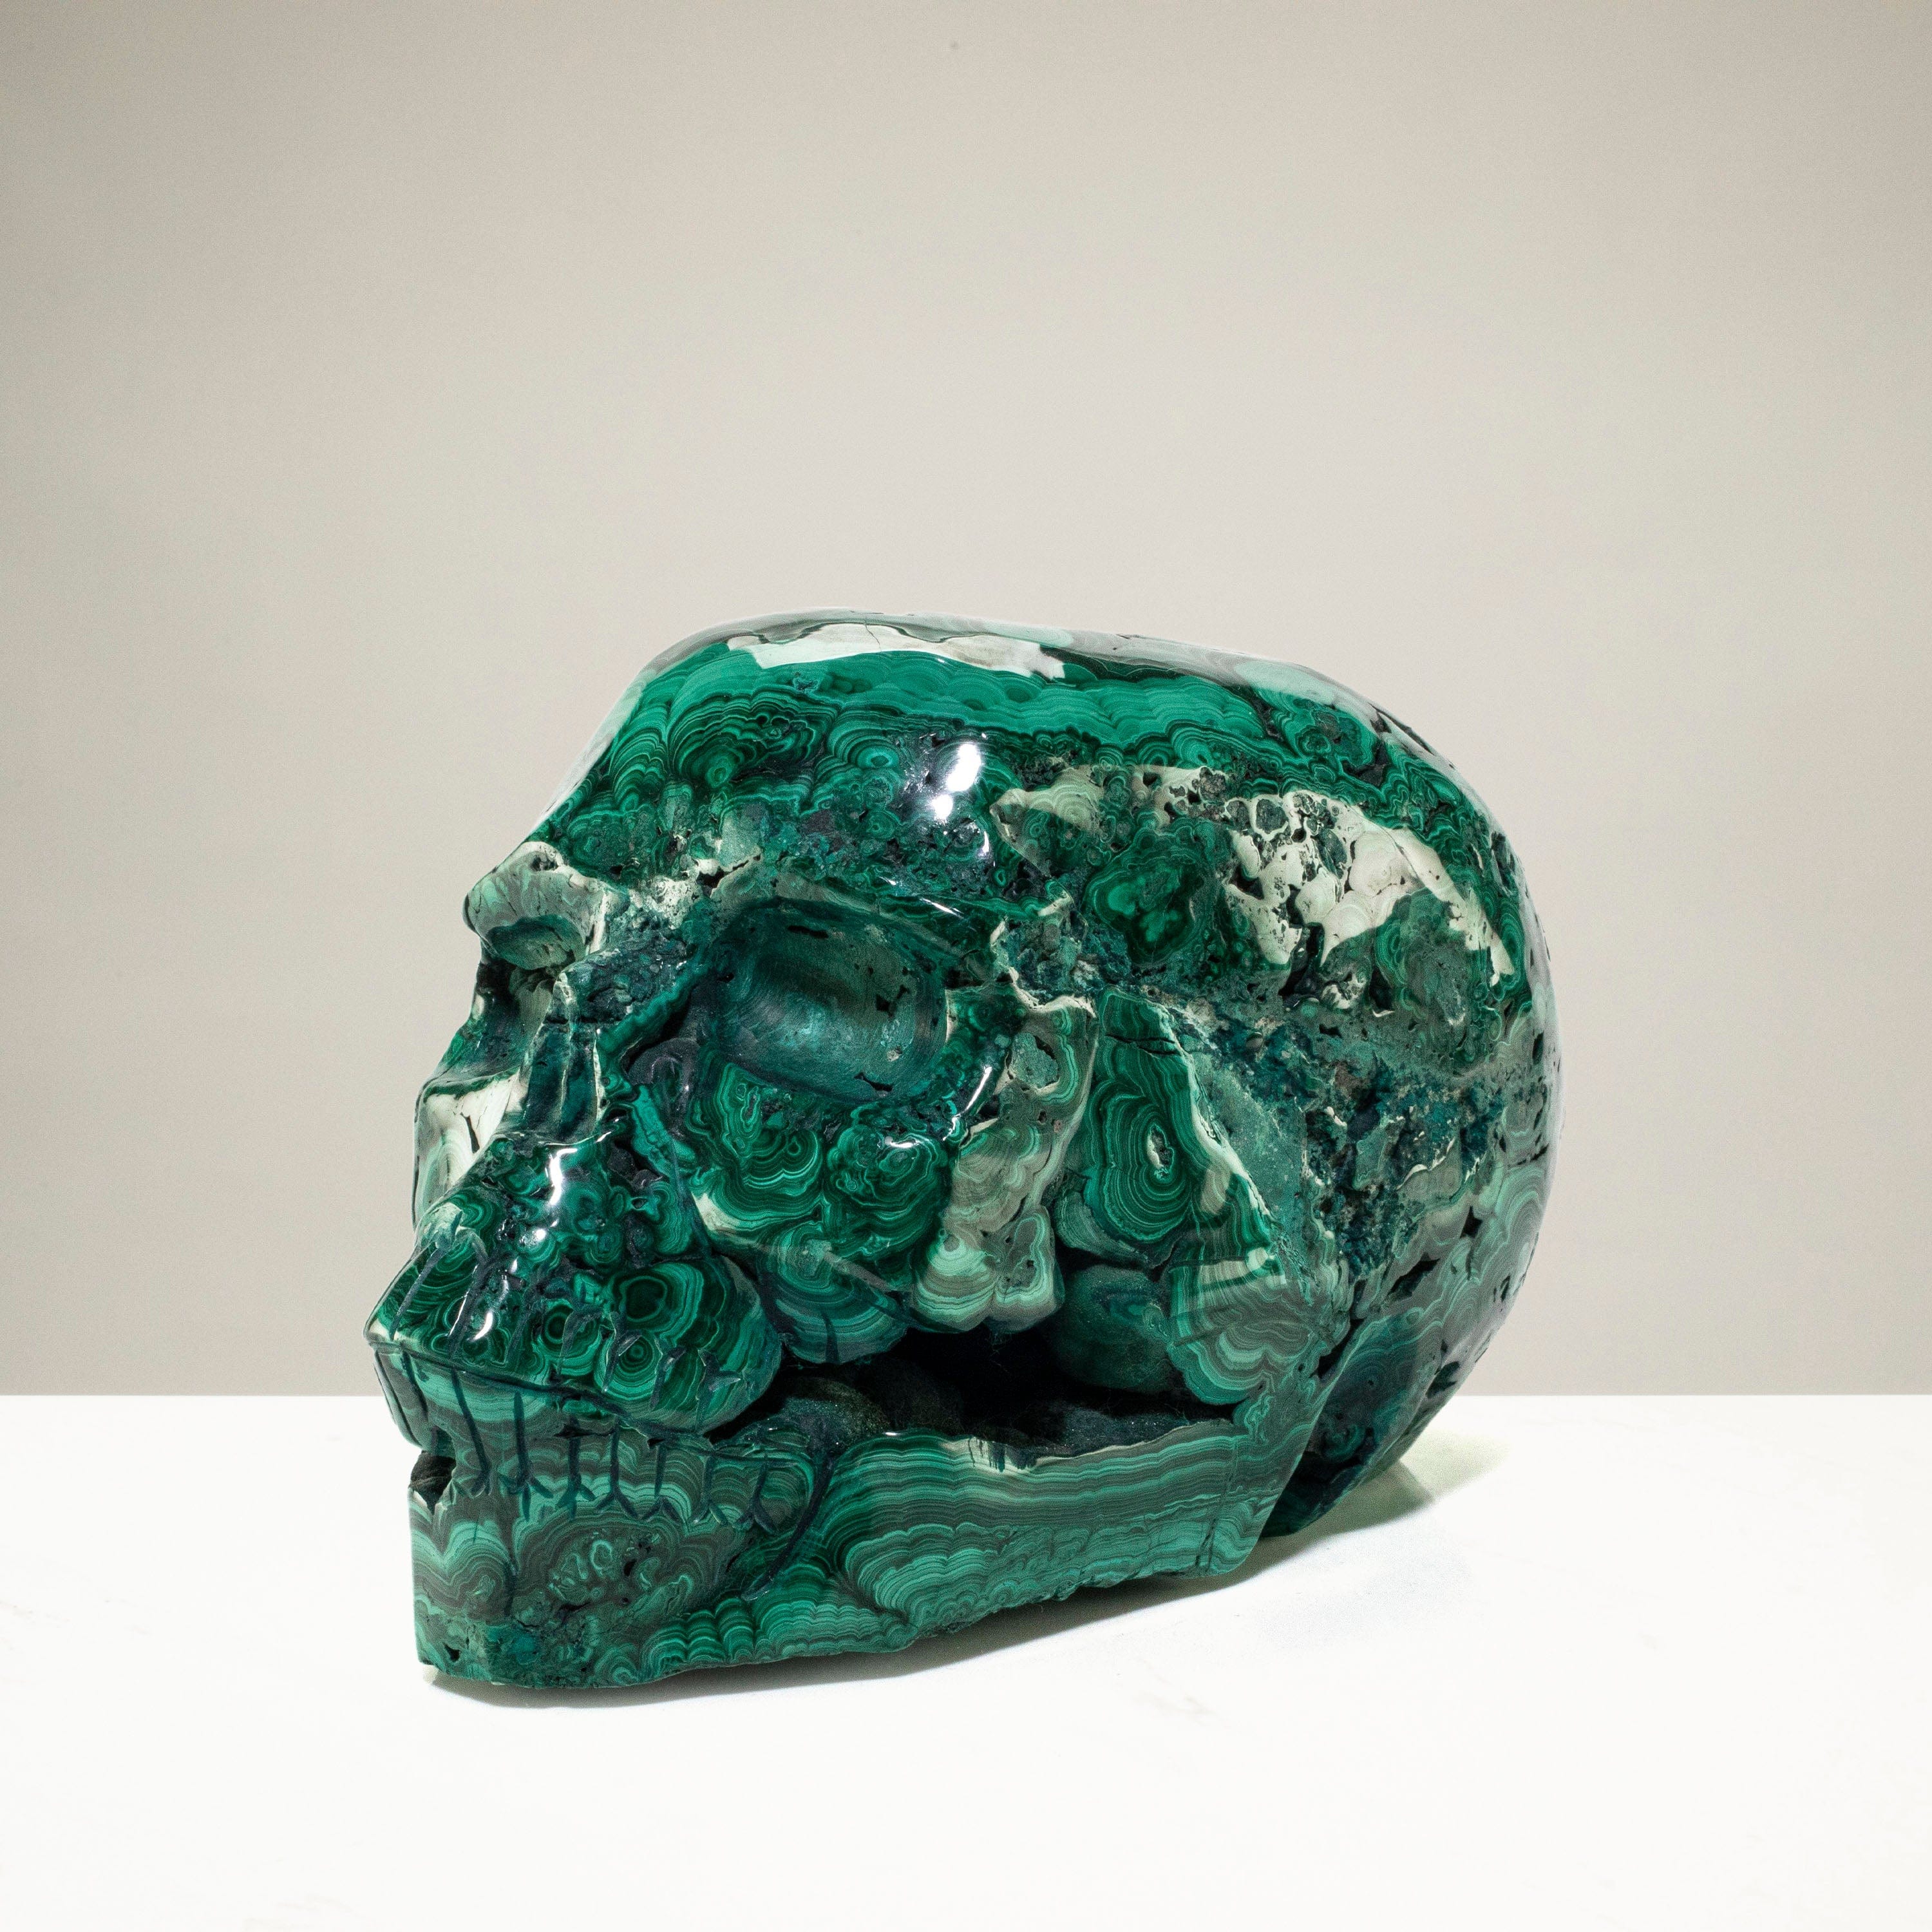 Kalifano Malachite Malachite Skull Carving 7" / 4,640g SK16800-MA.001